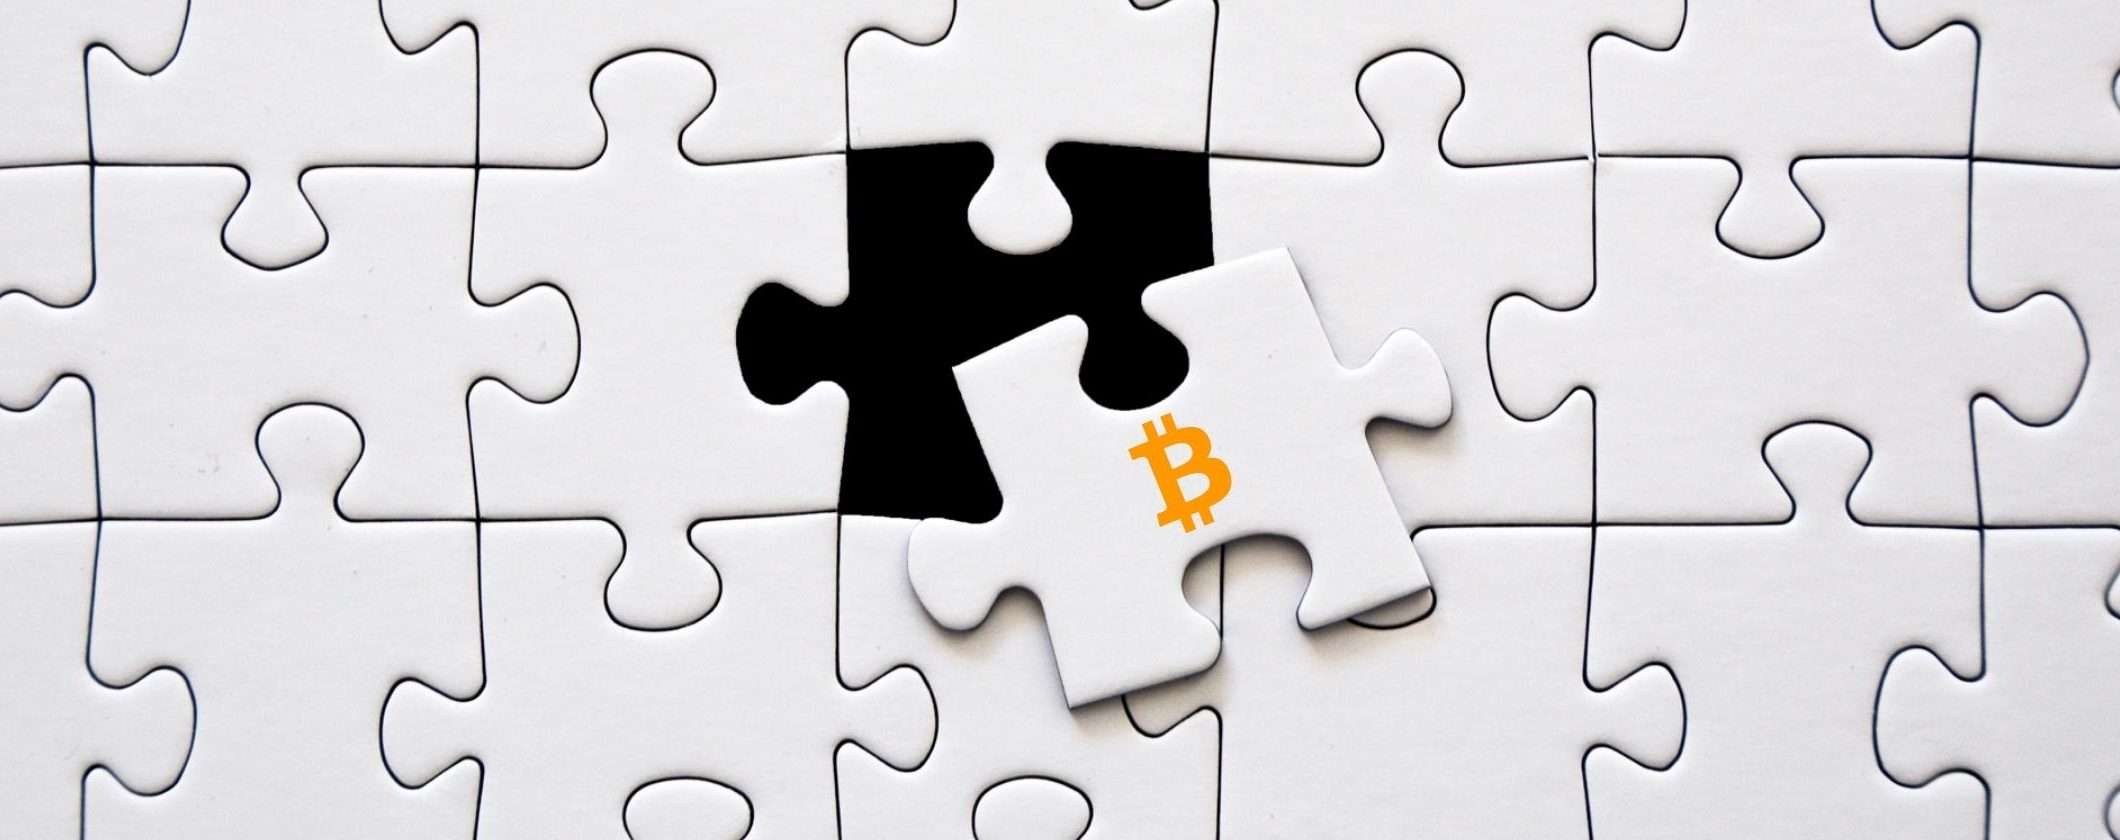 Bitcoin supera i 21 mila: momento per acquistare o scappare?